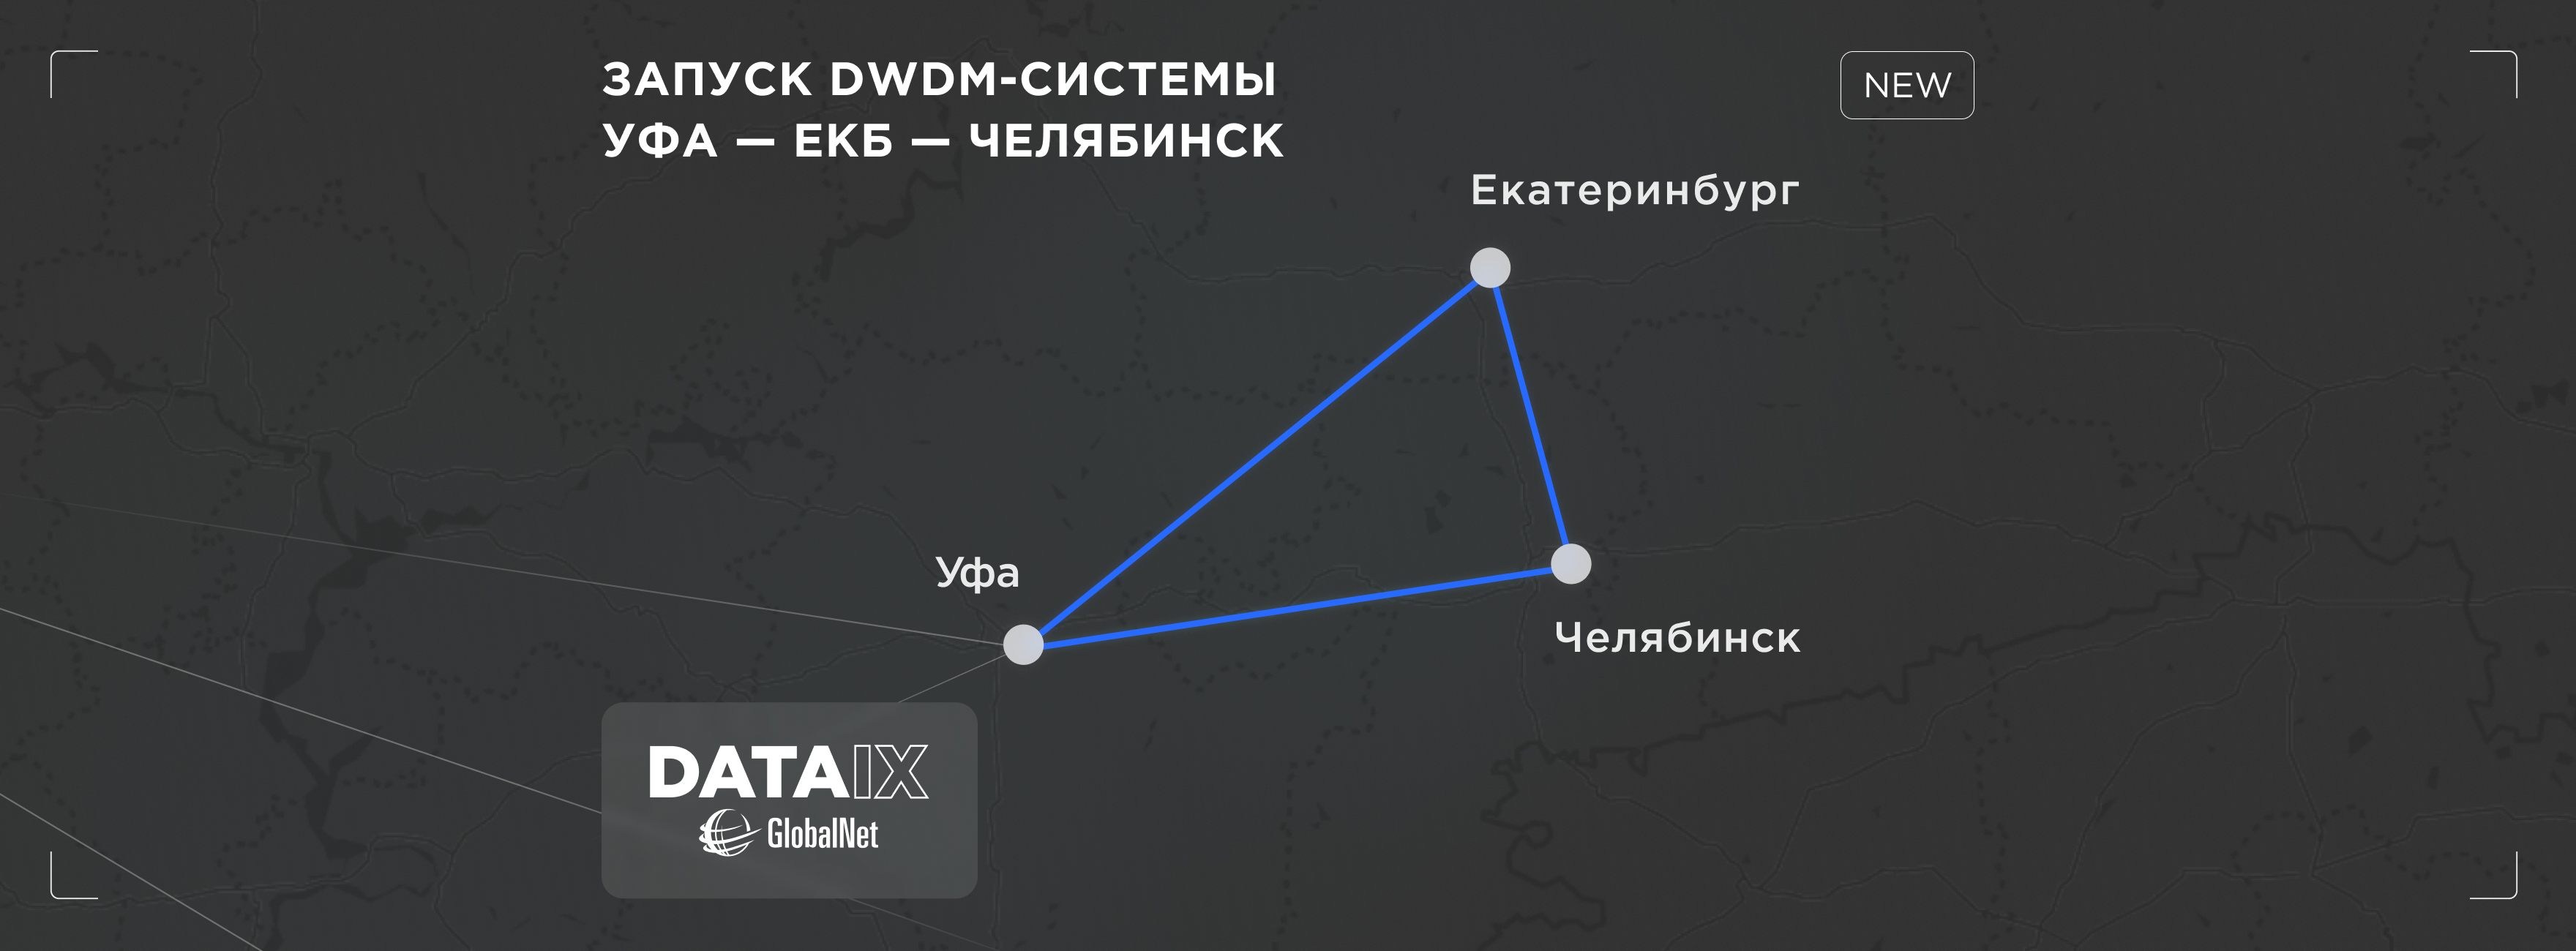 Новая DWDM-система Уфа-Екатеринбург-Челябинск